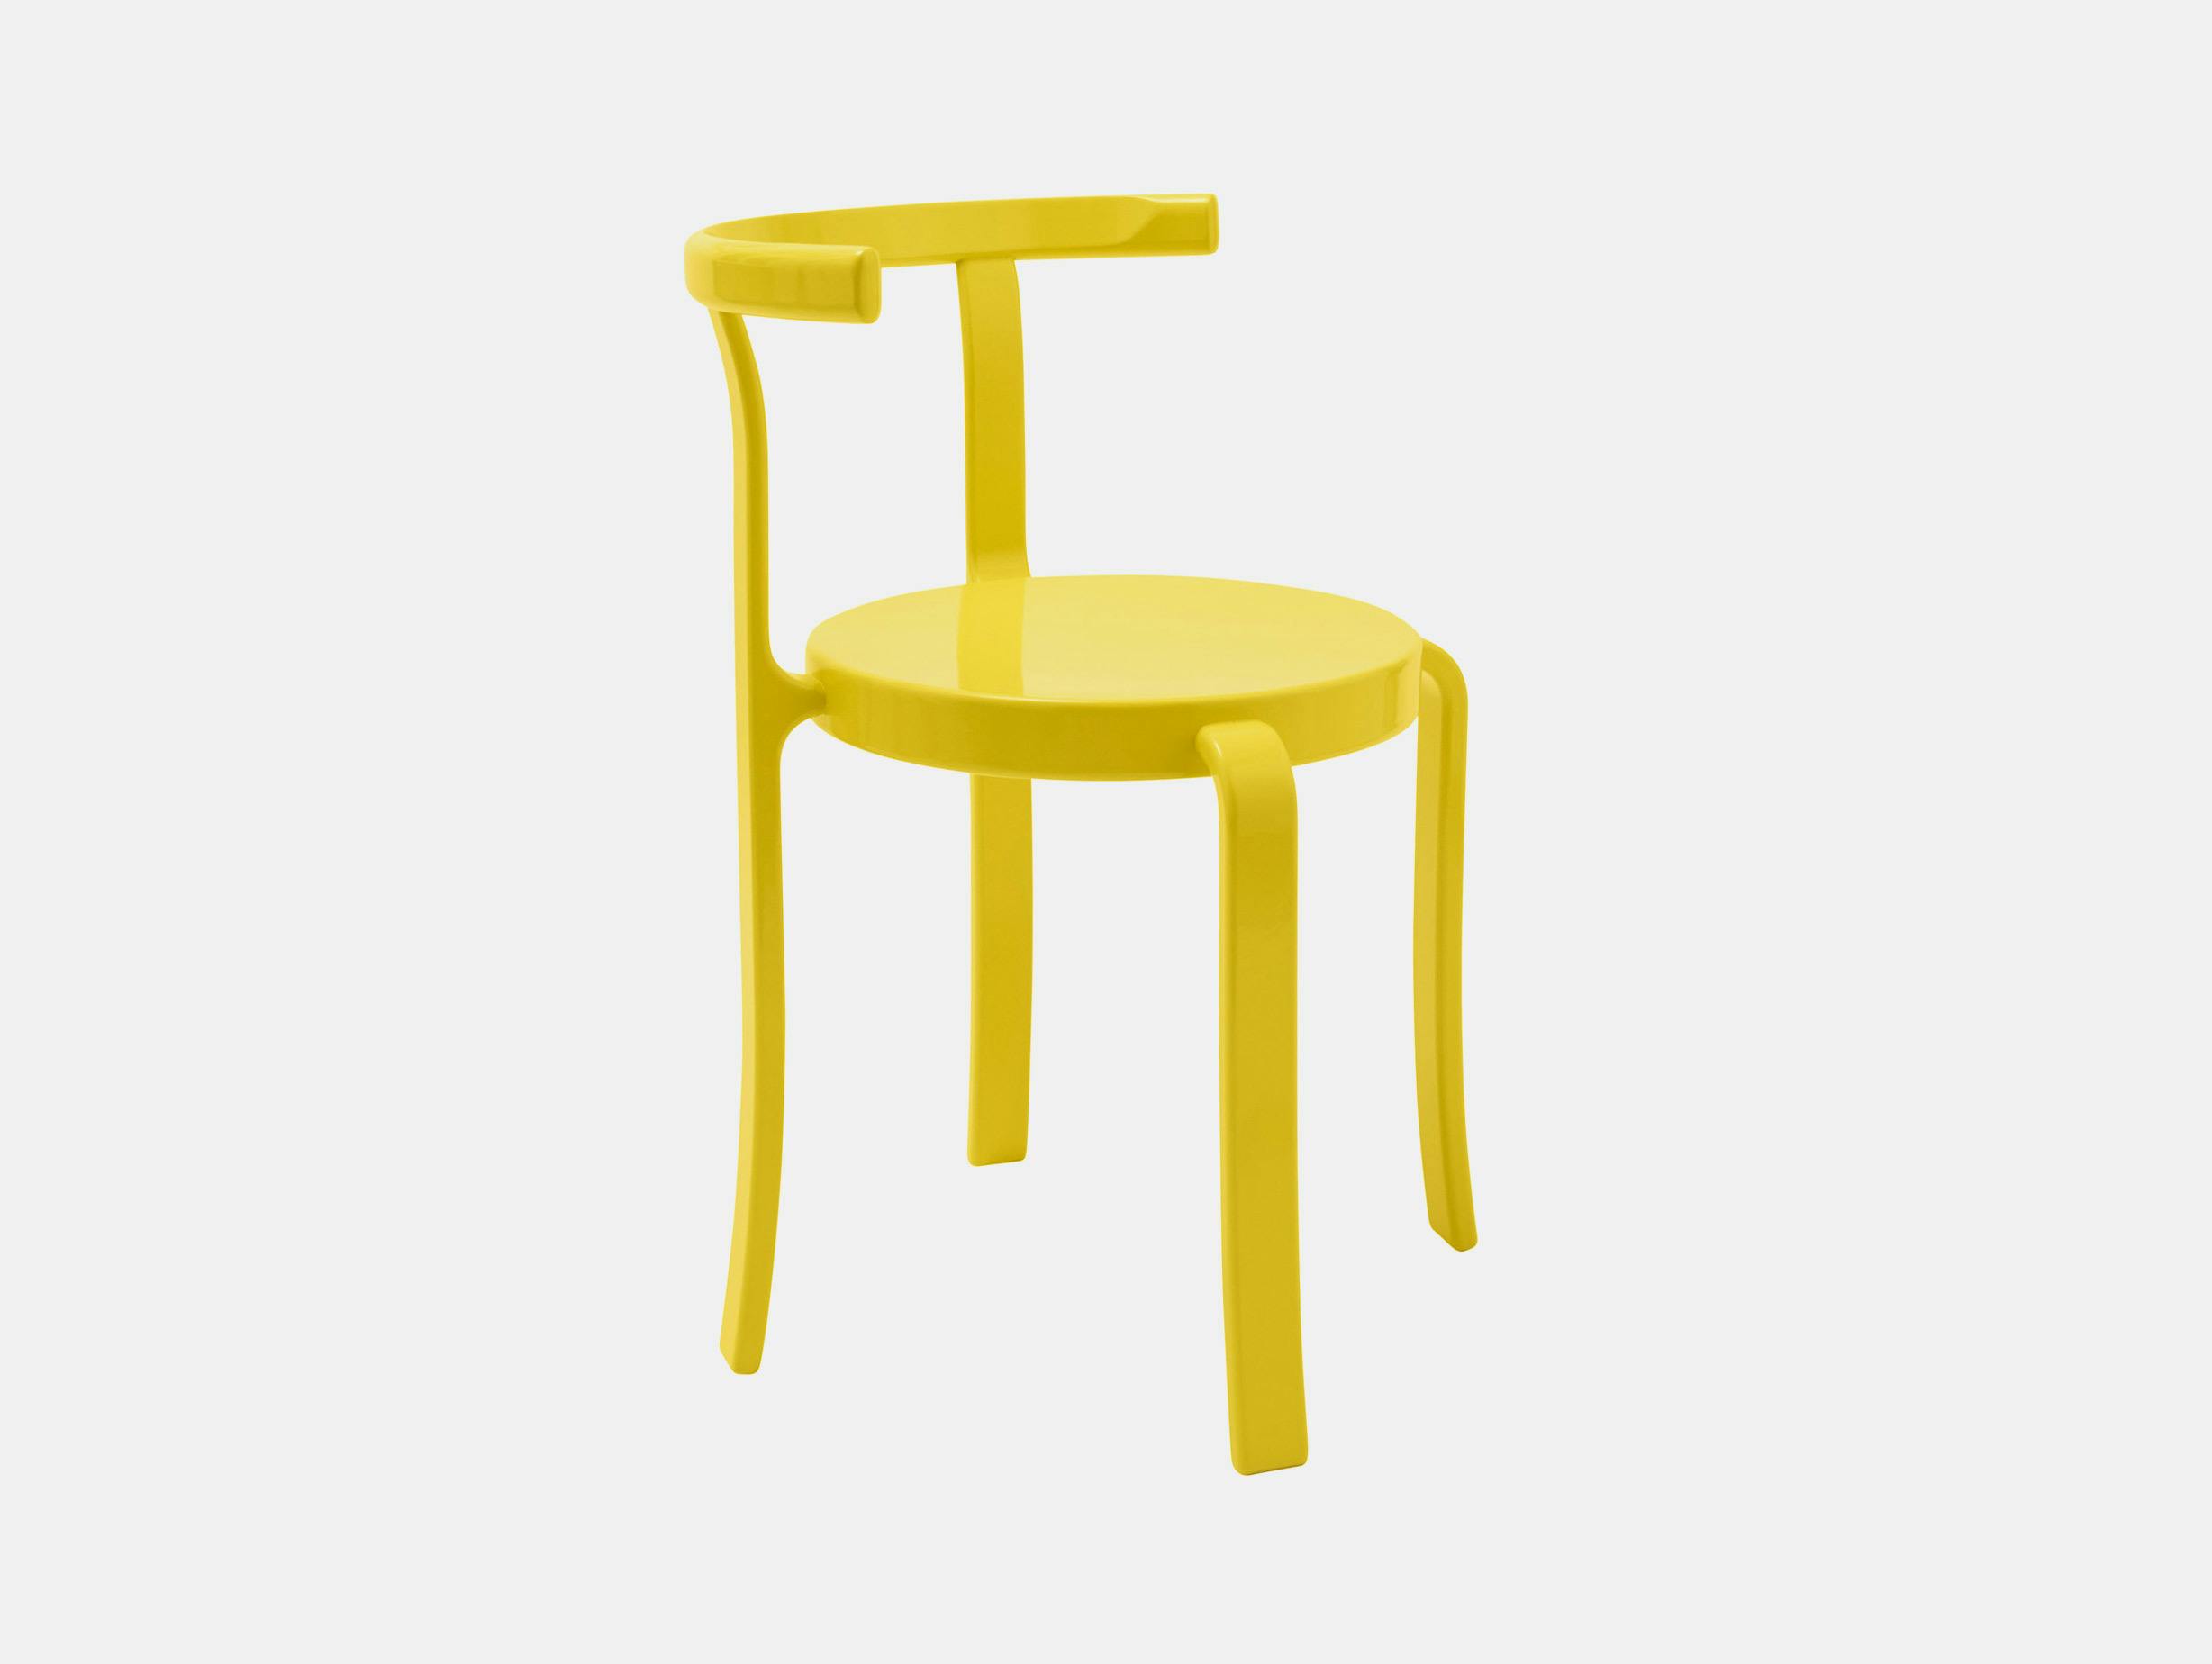 Magnus olesen rud thygesen johnny sorensen 8000 series chair retro yellow